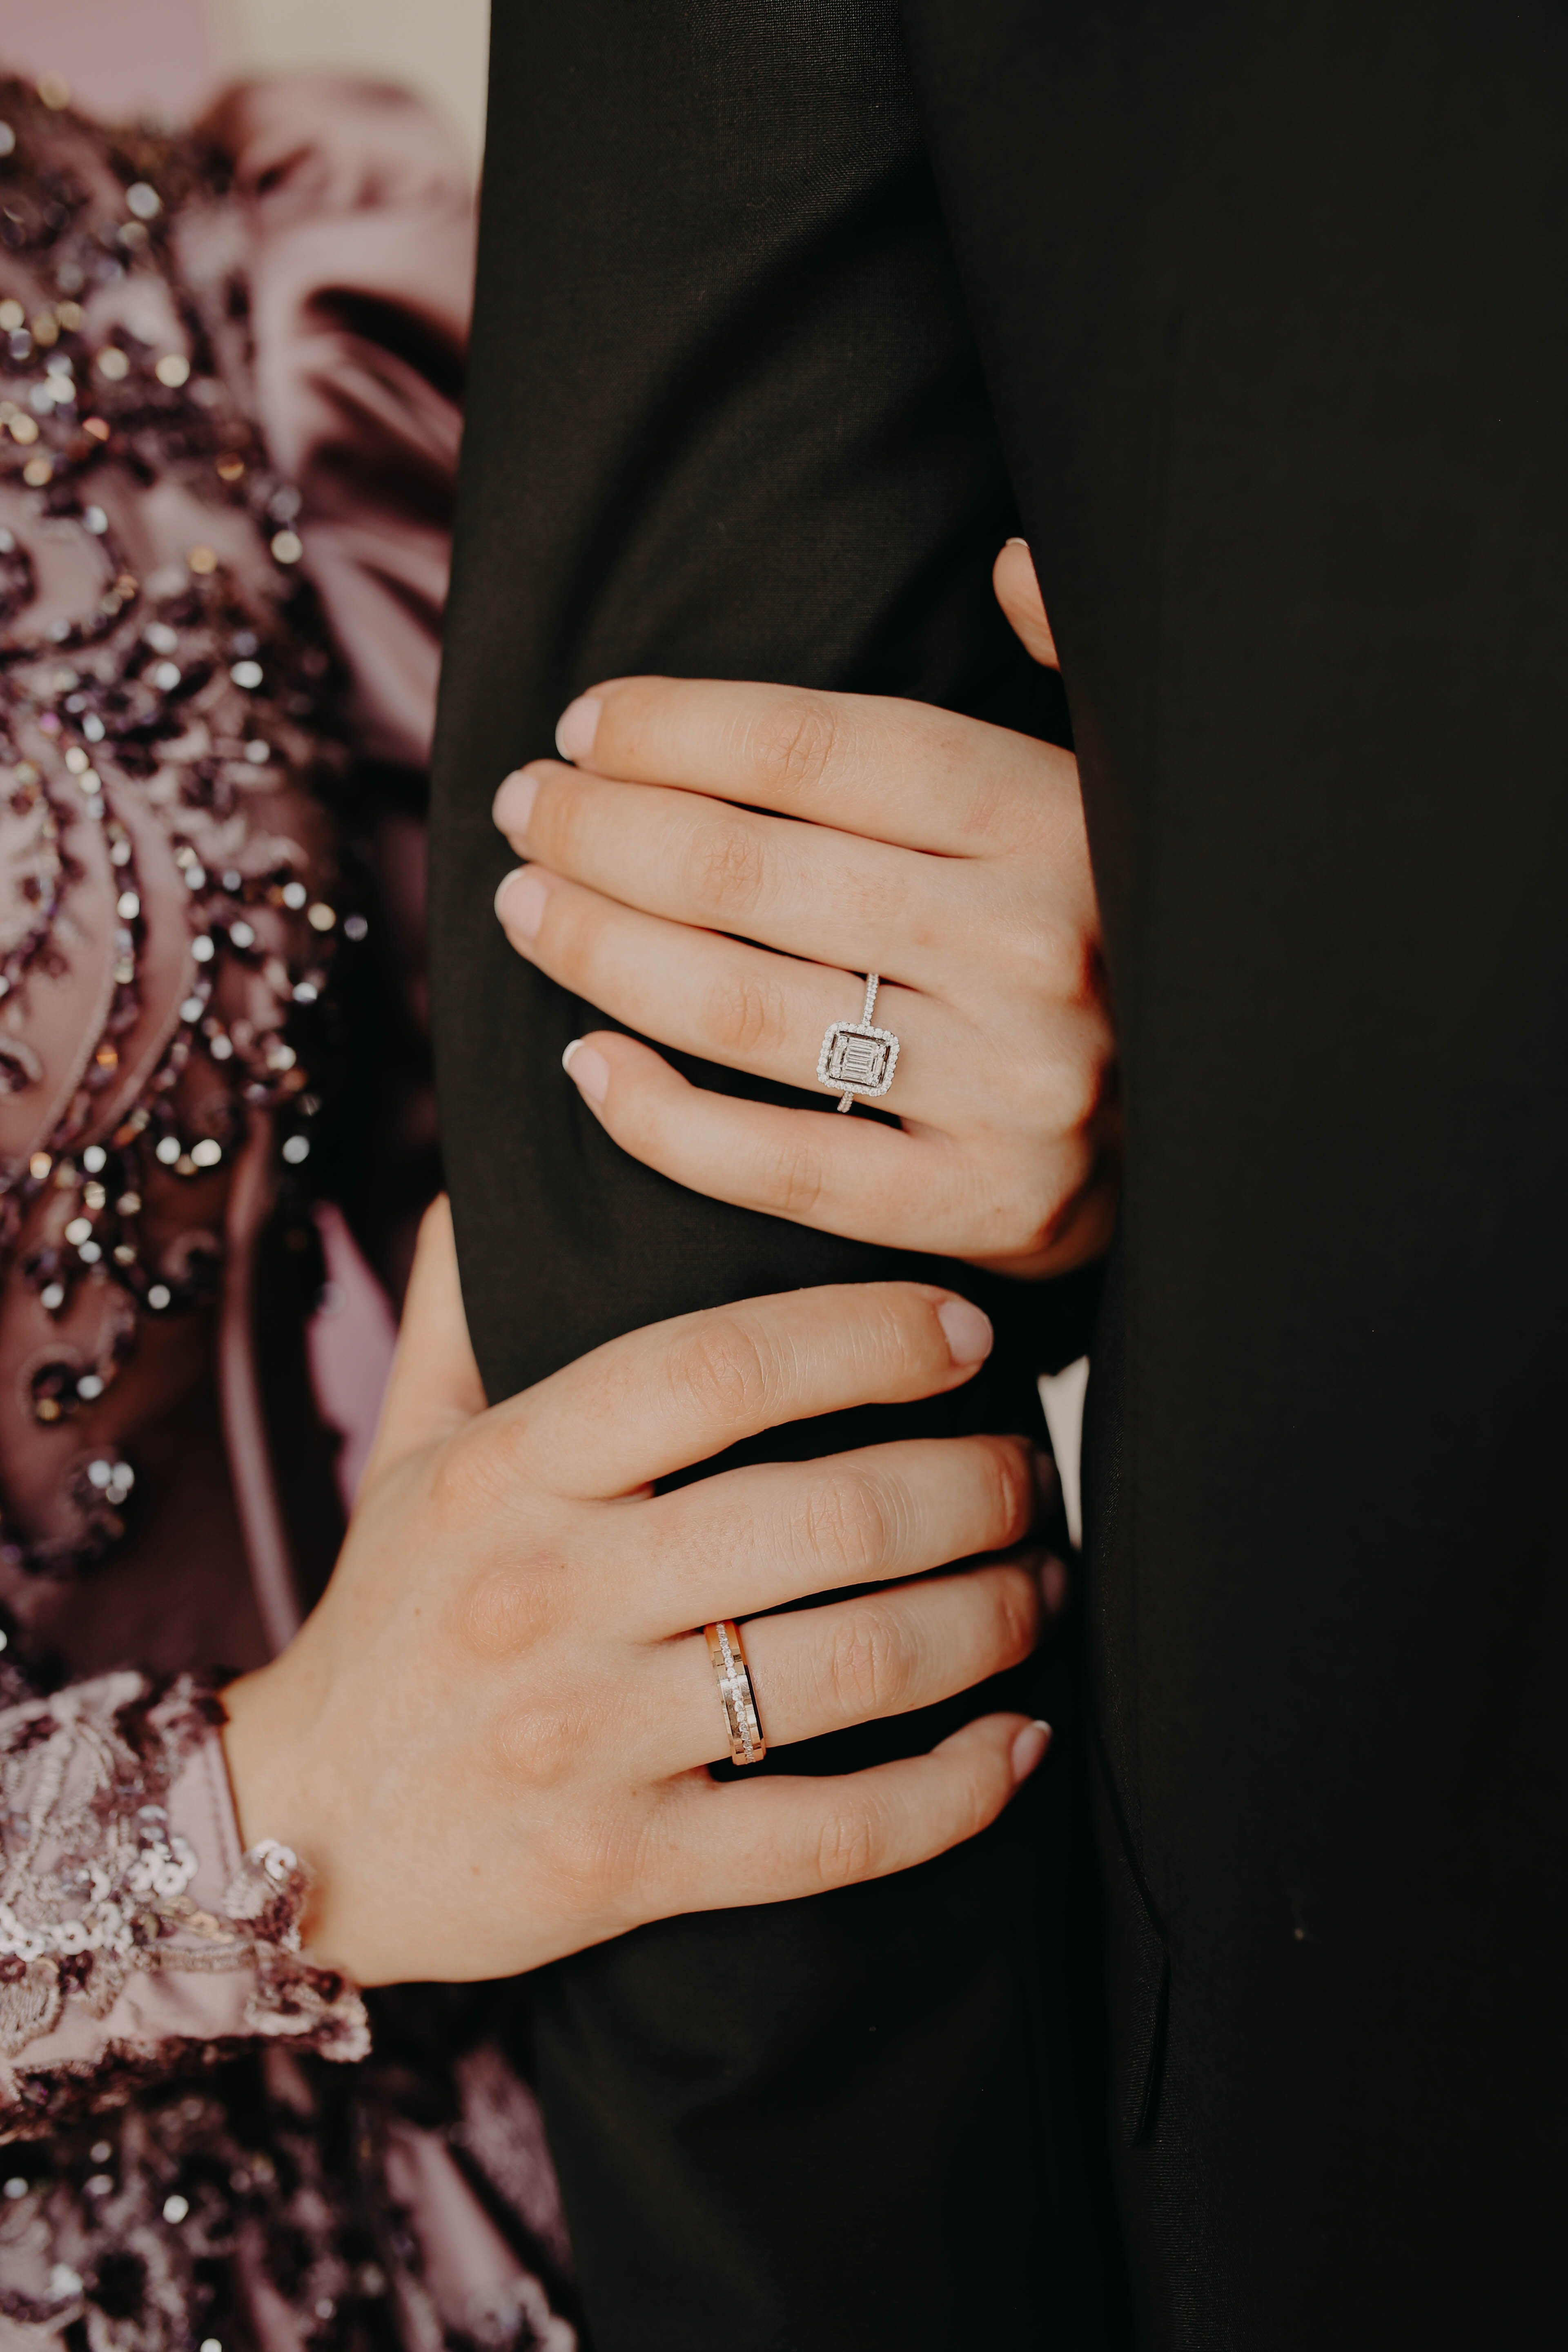 Das Paar hat sich das Eheversprechen gegeben und sich auf den Weg gemacht, glücklich zu werden! | Quelle: Pexels